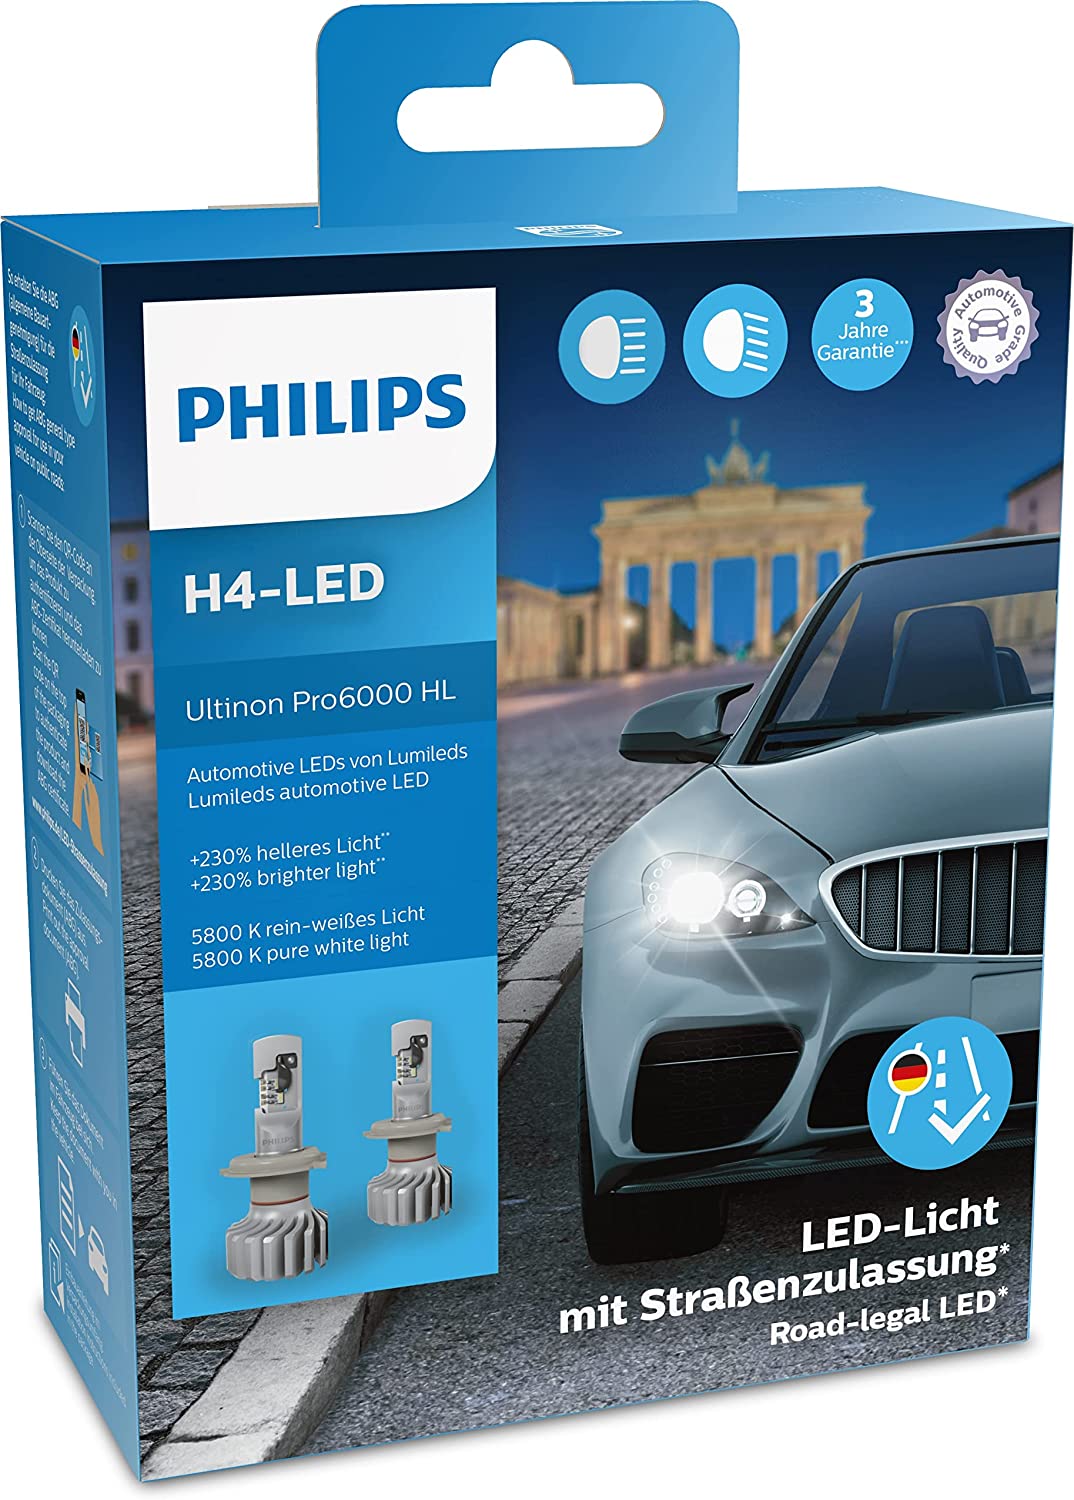 LED-Licht nachrüsten / LED-Retrofit für Dein Fahrzeug! 